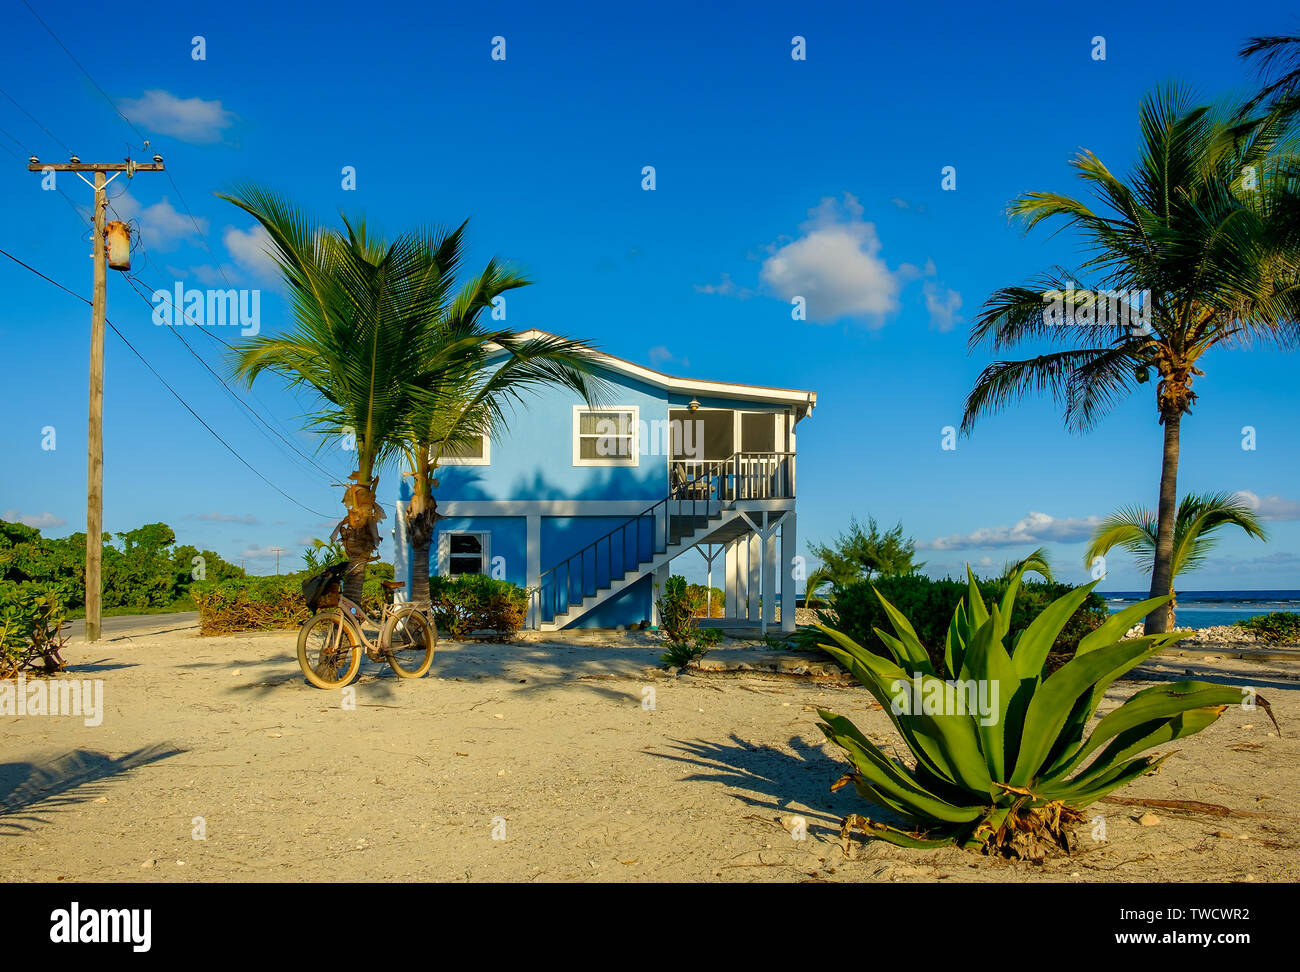 La petite Caïman, Îles Cayman, Nov 2018, deux étages maison bleue par la mer des Caraïbes Banque D'Images